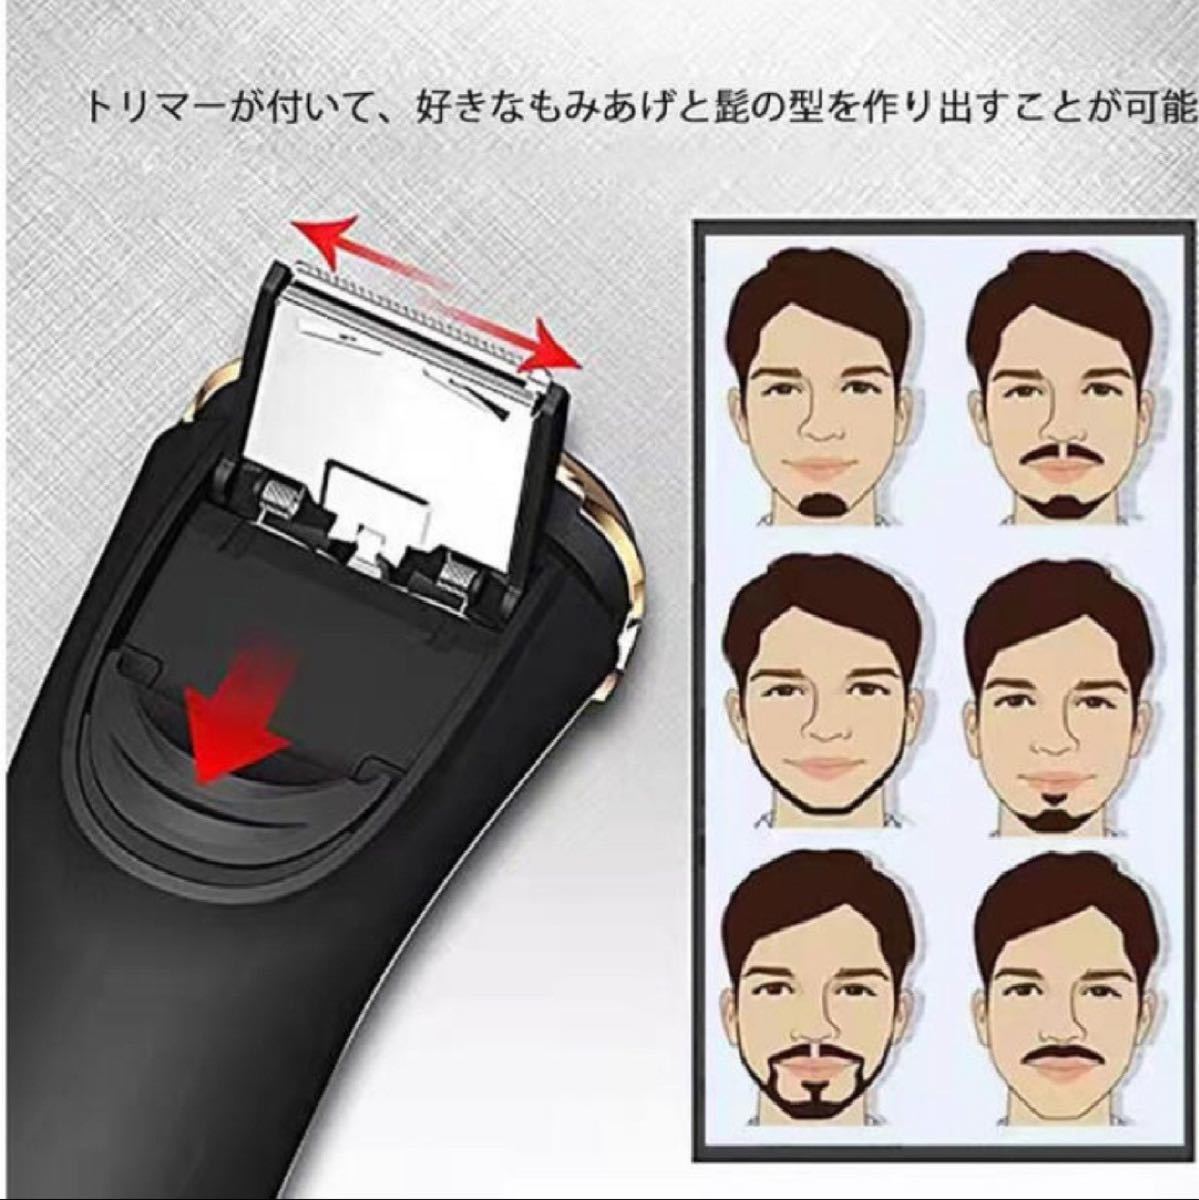 シェーバー メンズ 髭剃り 電気シェーバー 回転式 IPX7防水 深剃り お風呂剃り 丸洗い可  USB充電式 充電中利用可 